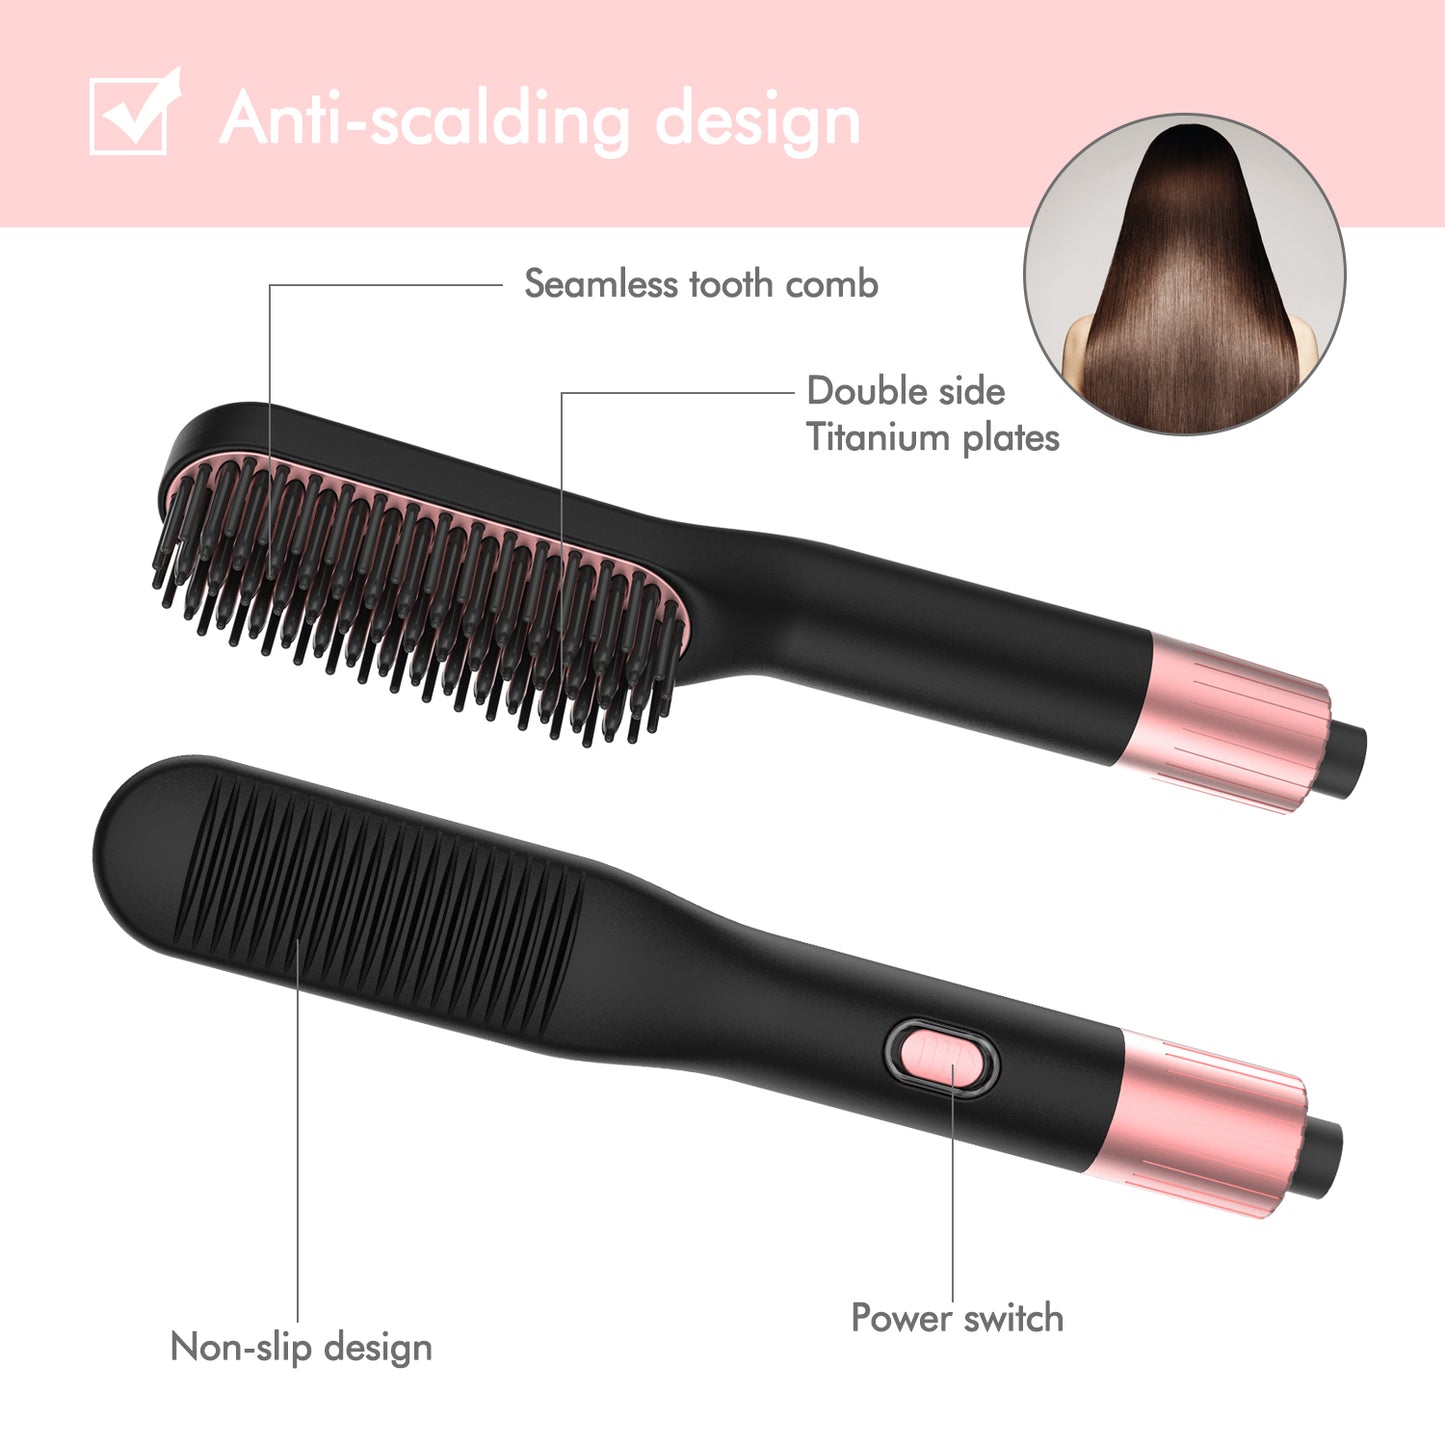 Hair straightener brush comb